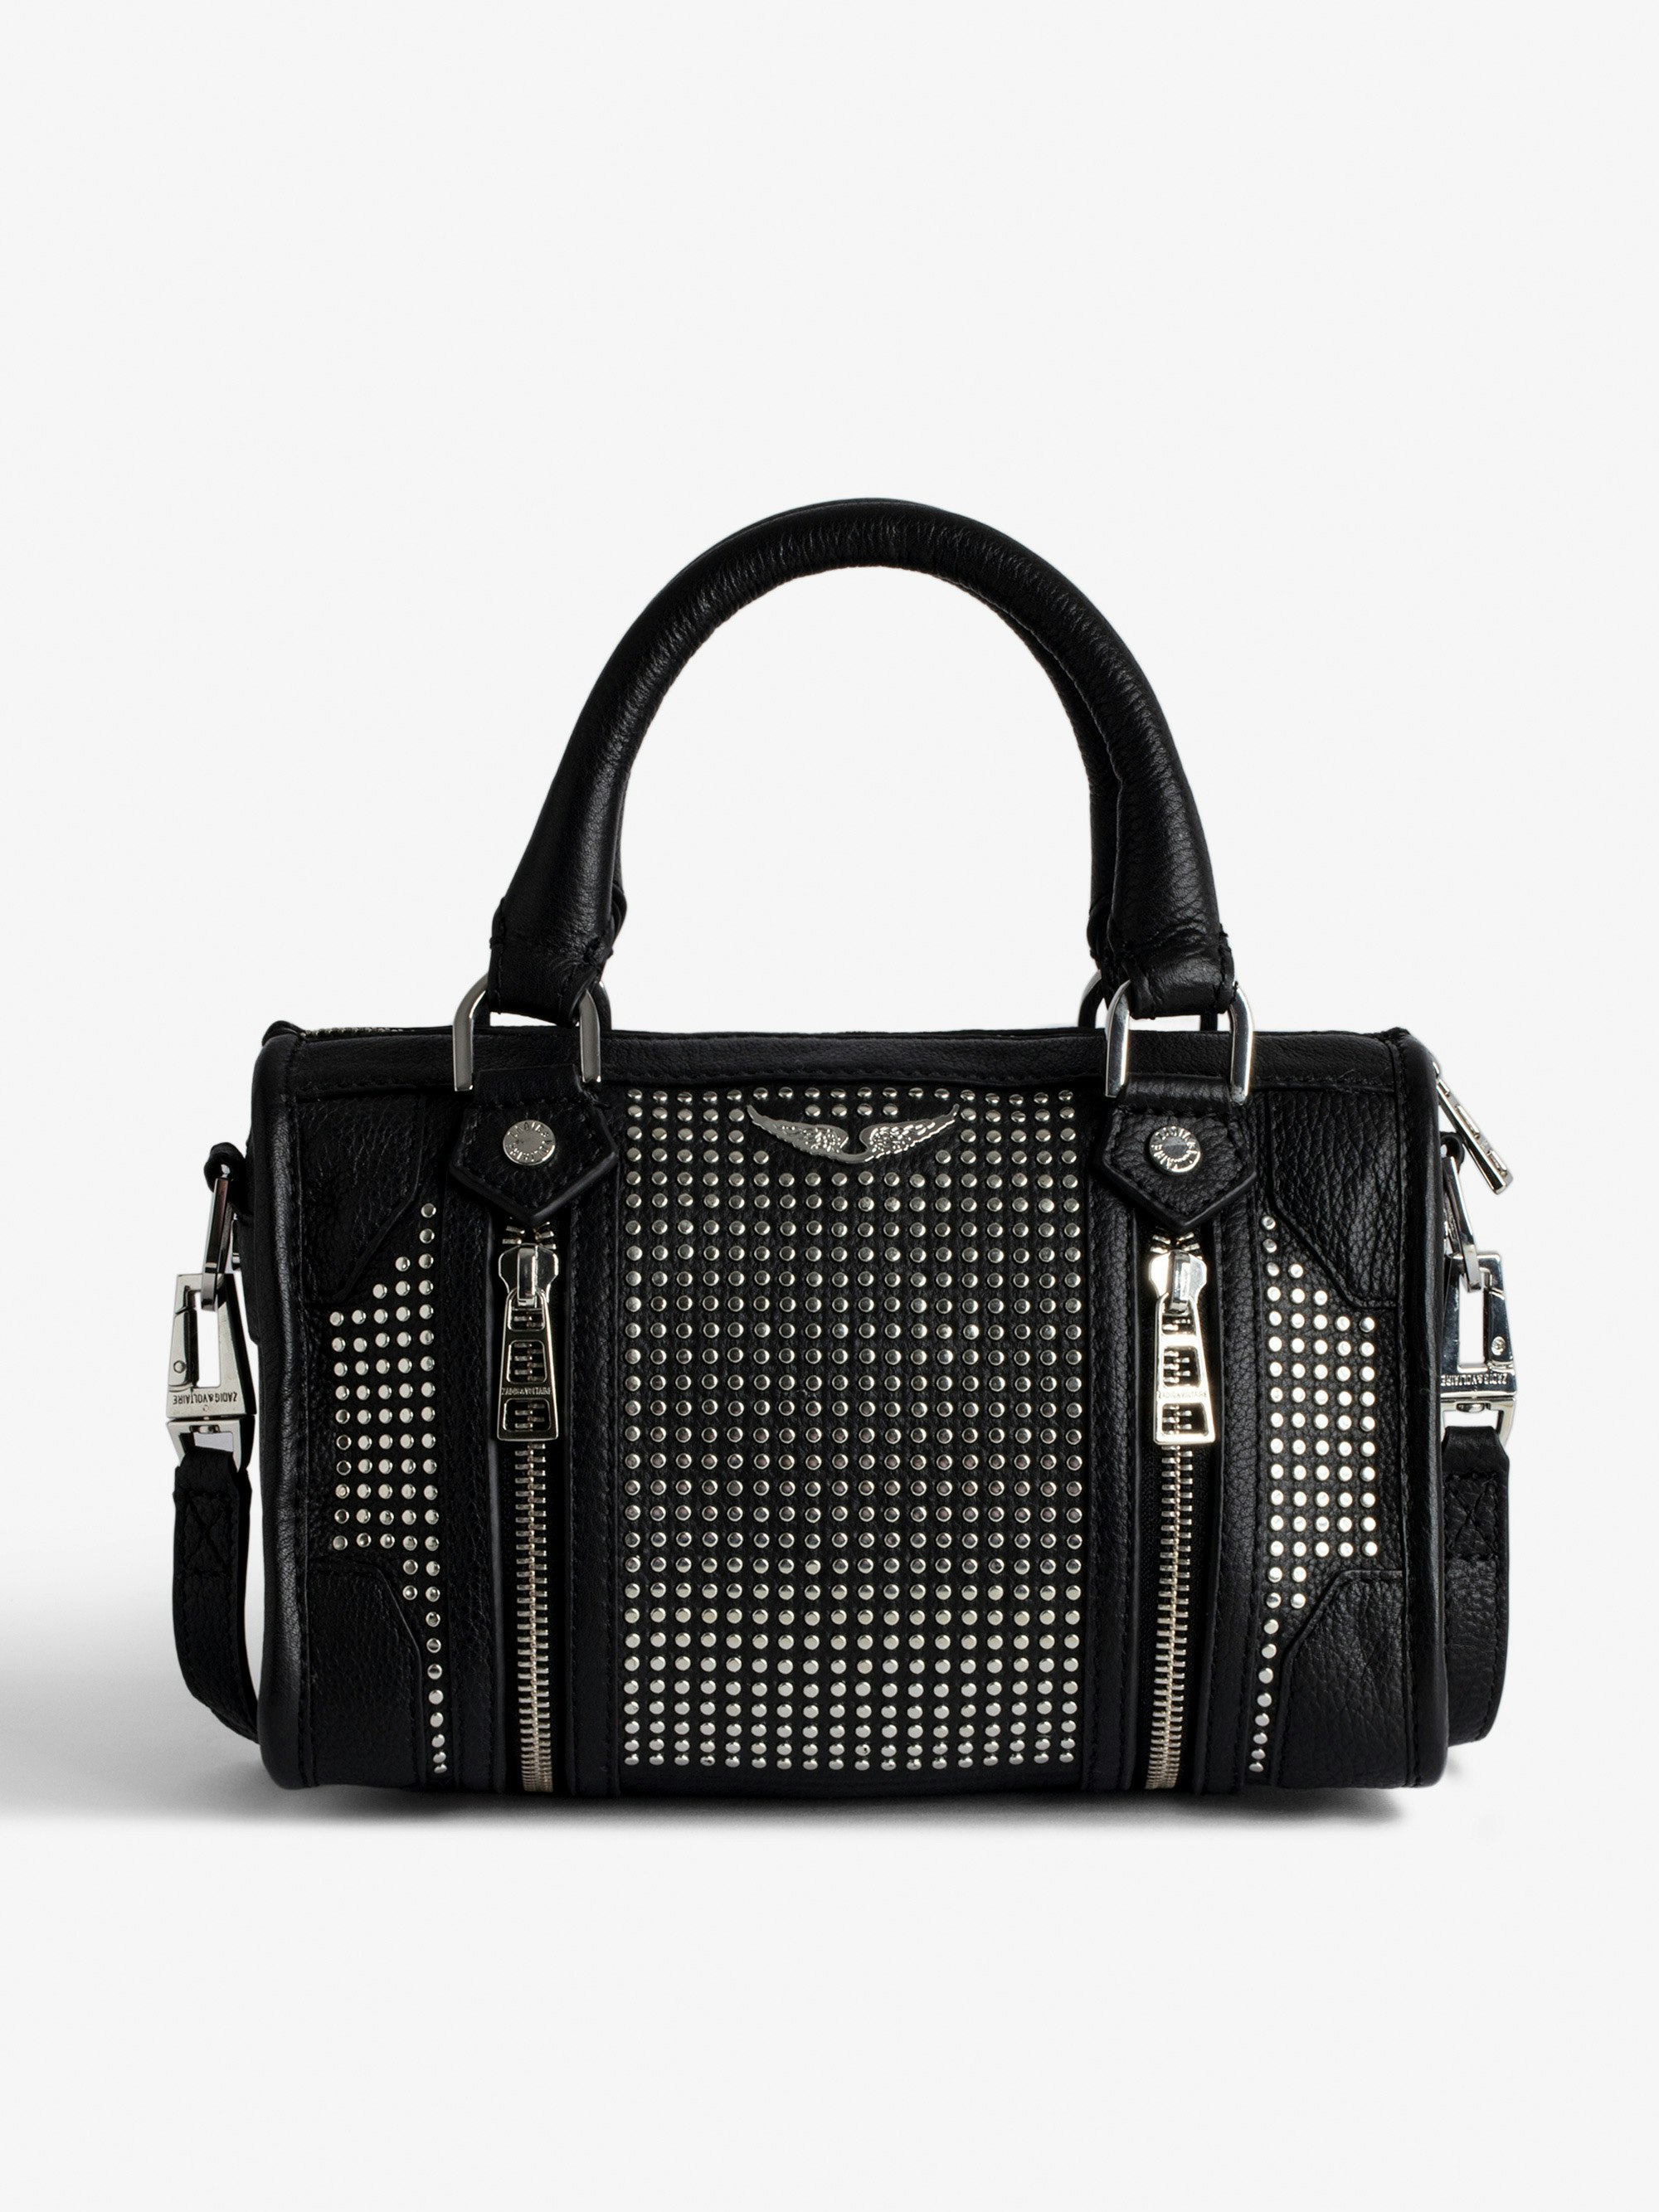 Borsa XS Sunny #2 - Piccola borsa con cerniera in pelle nera con borchie e tracolla donna.